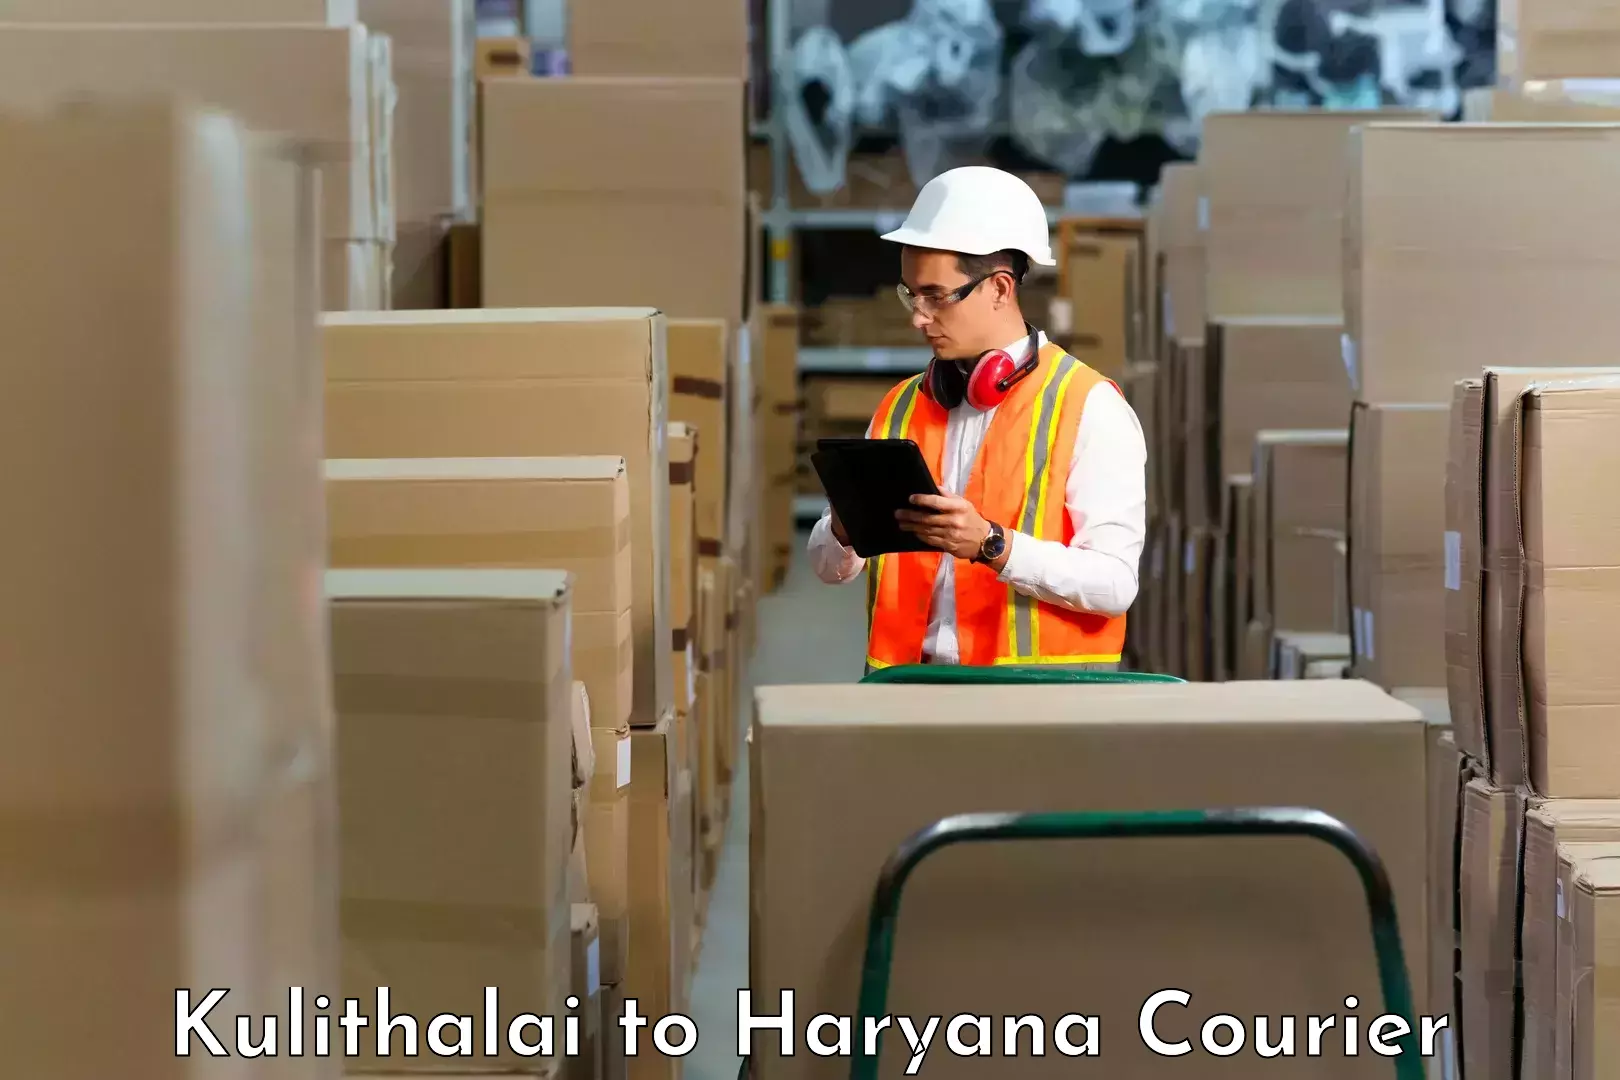 Comprehensive logistics Kulithalai to NCR Haryana